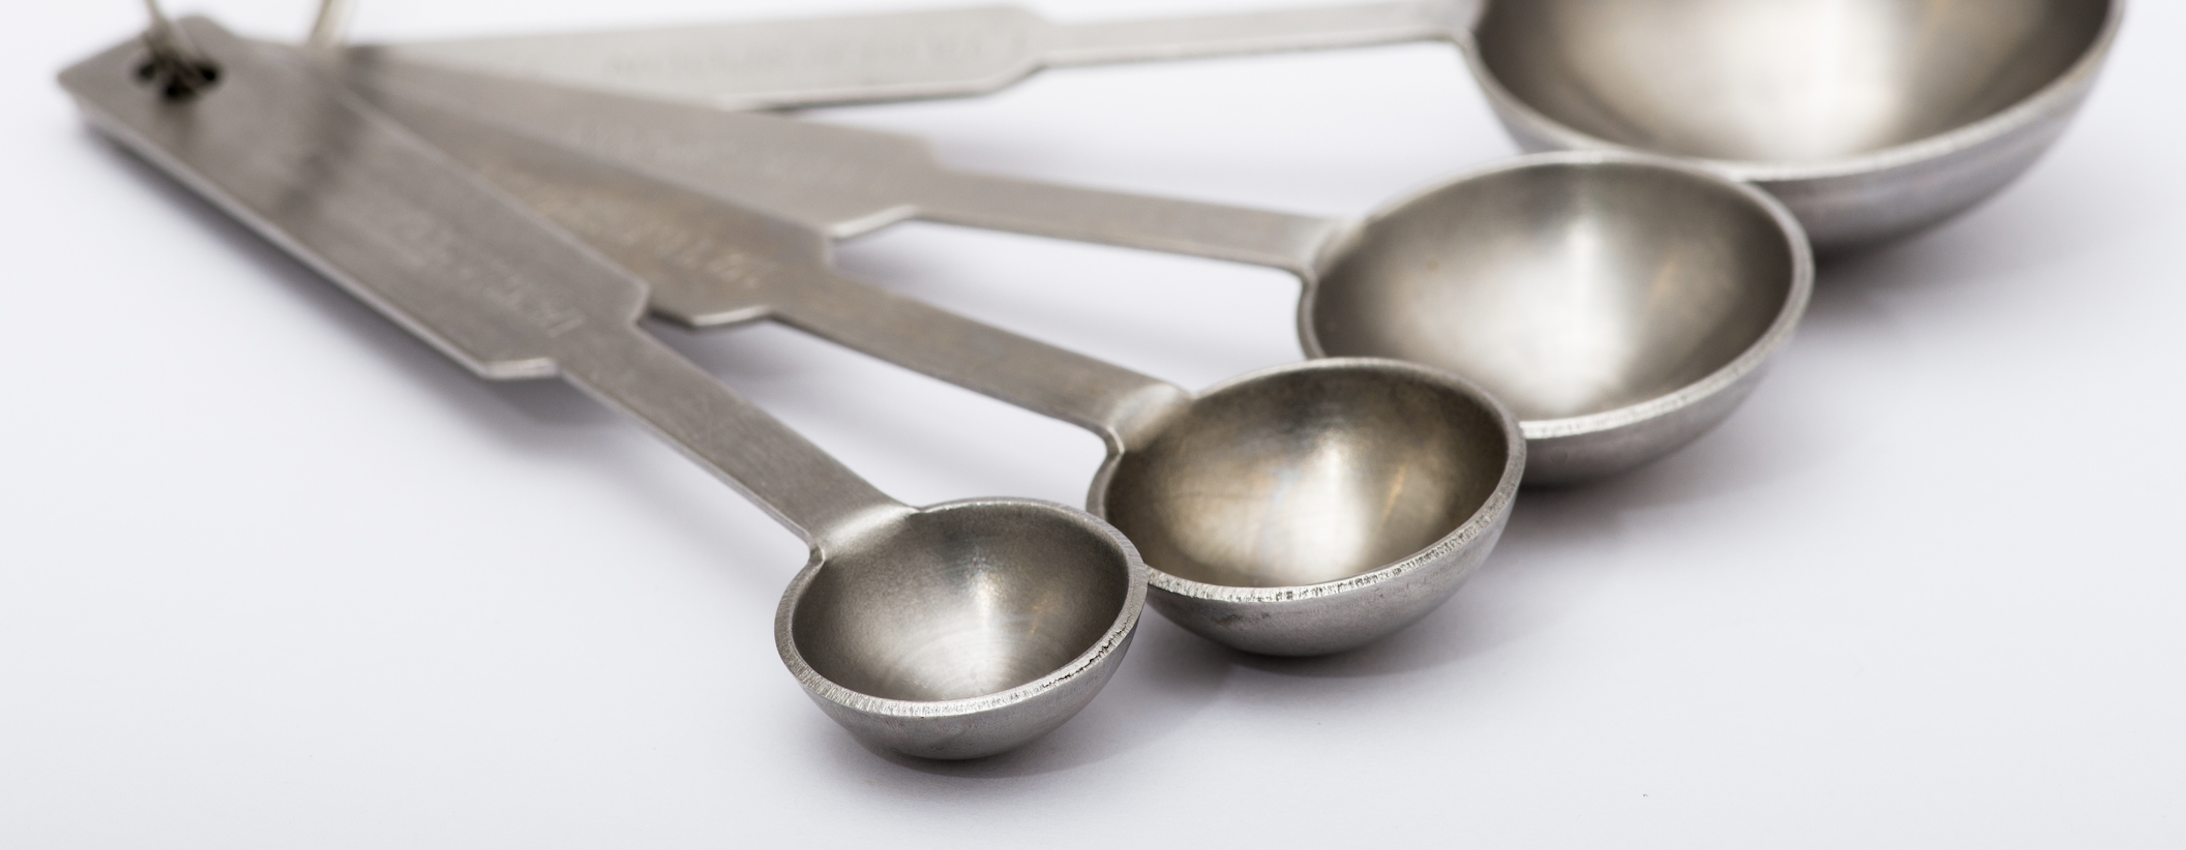 Metal measuring spoons